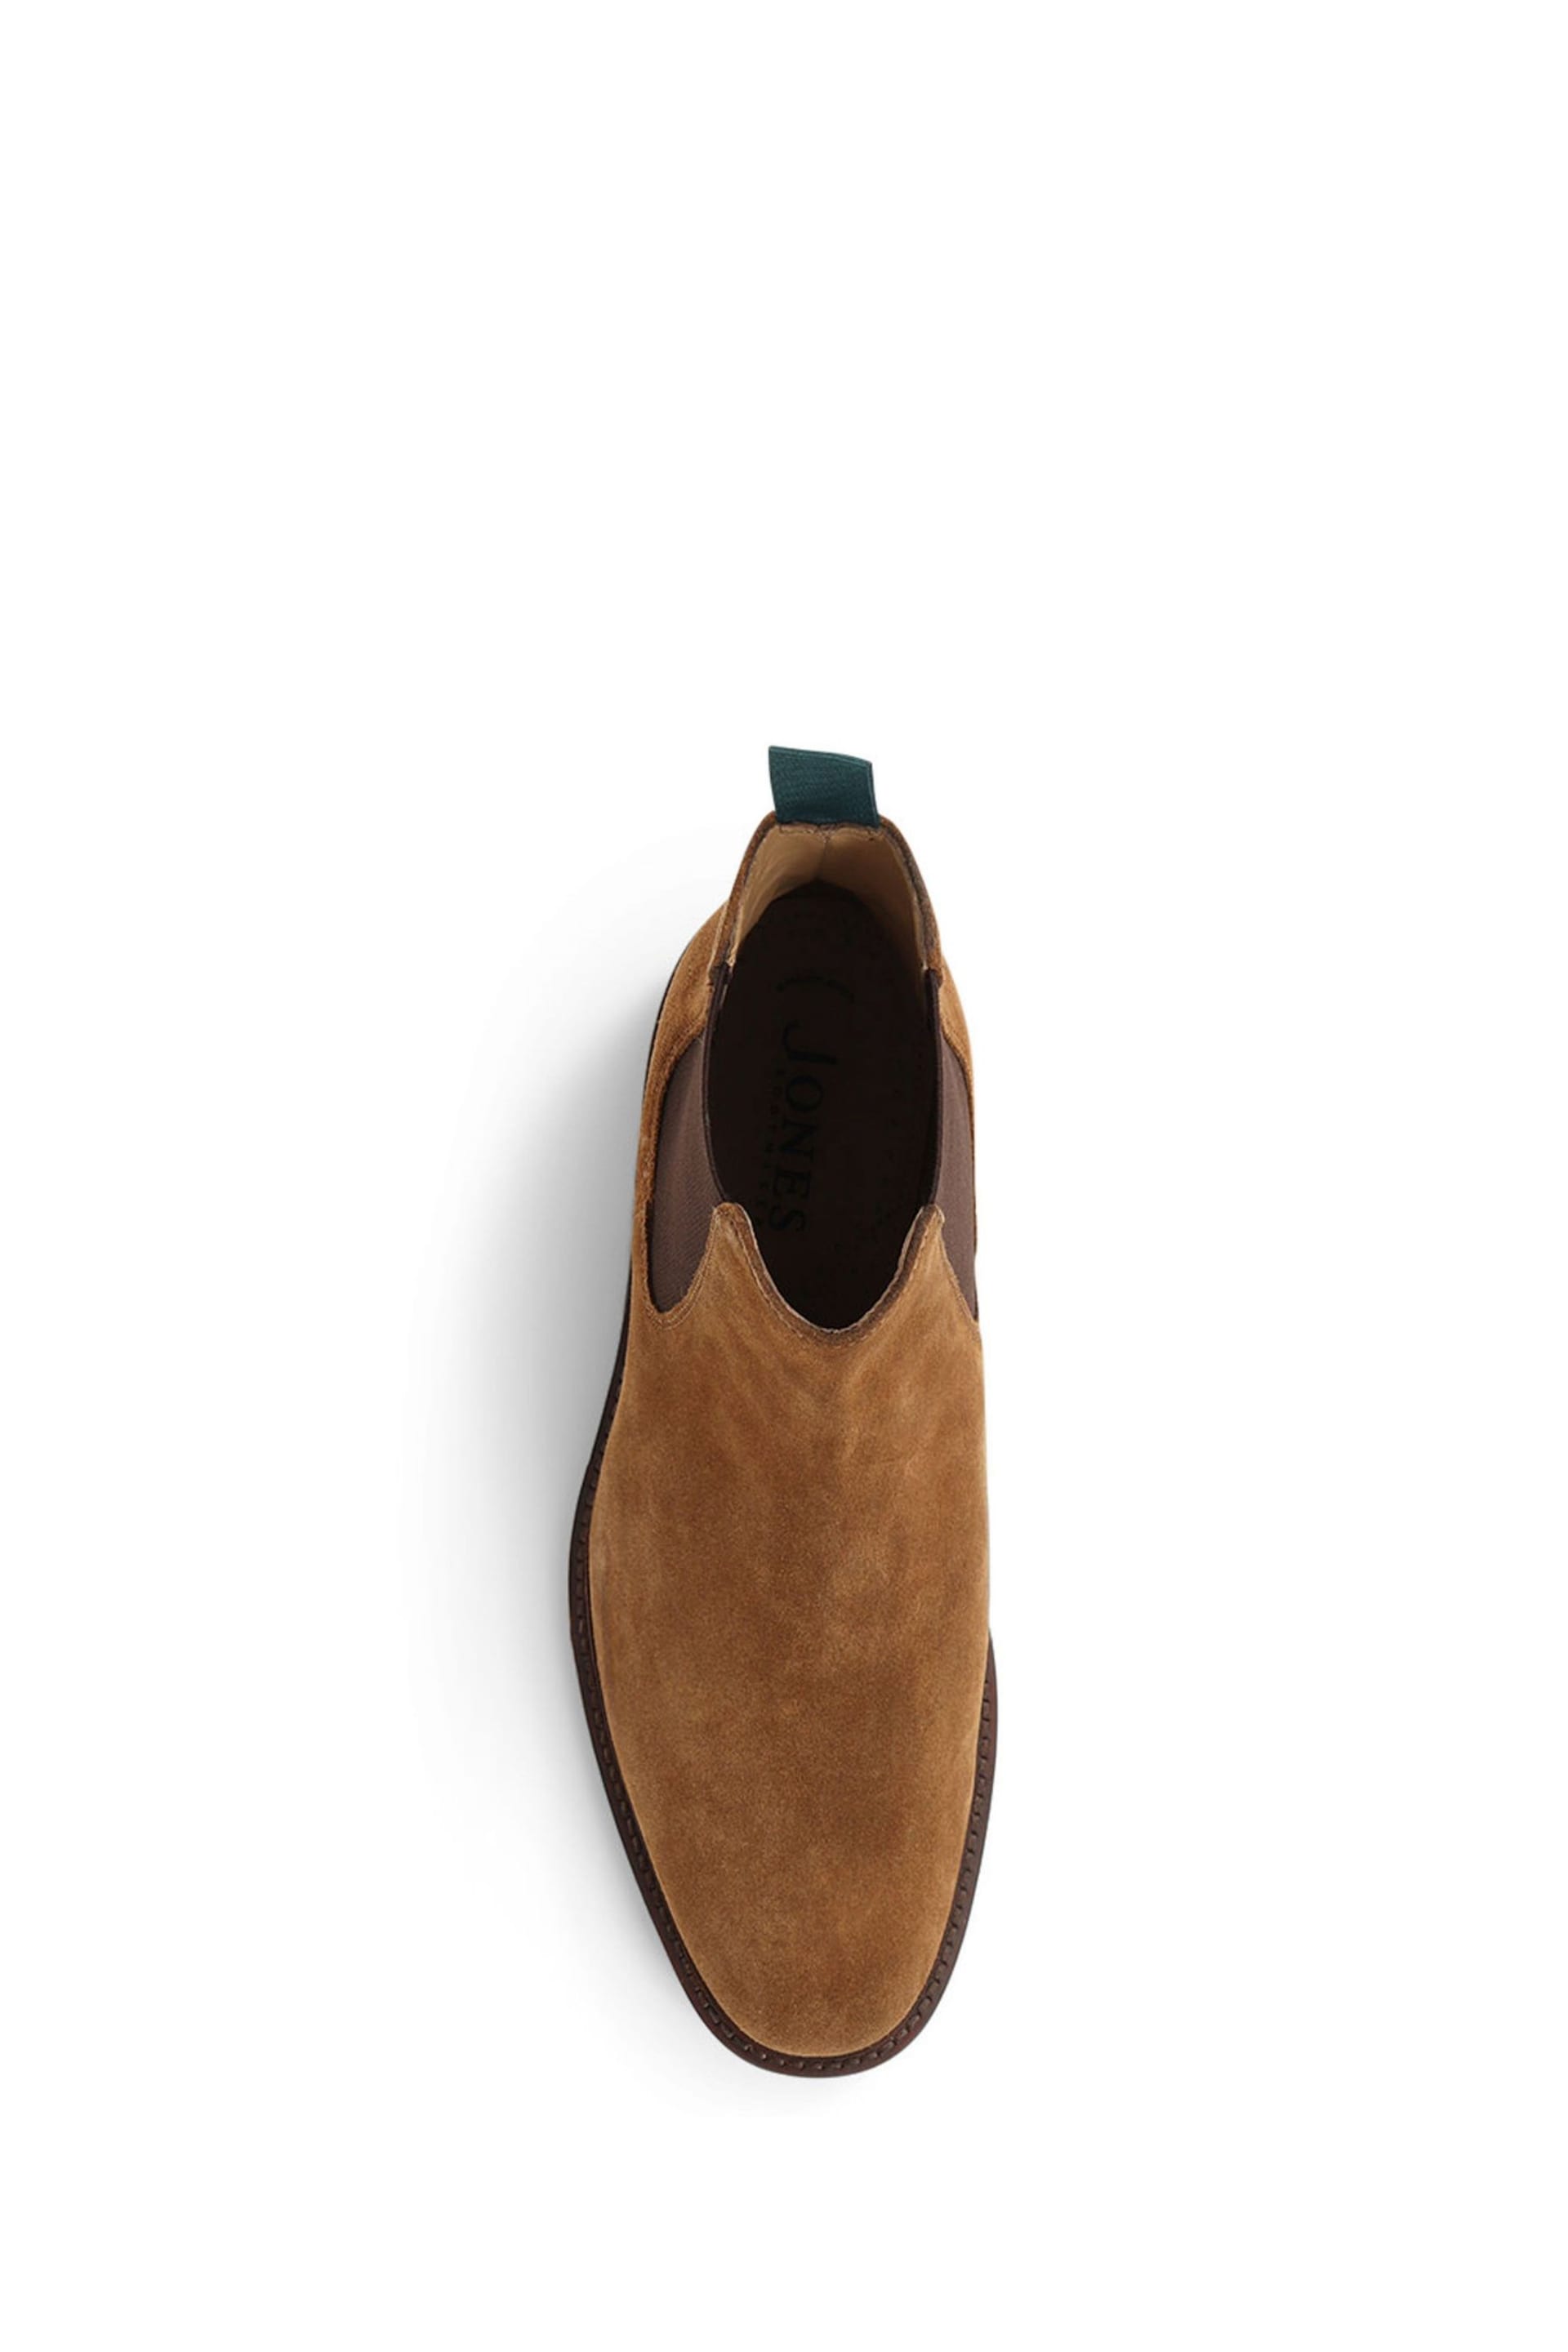 Jones Bootmaker Deakin Leather Mens Chelsea Boots - Image 4 of 6